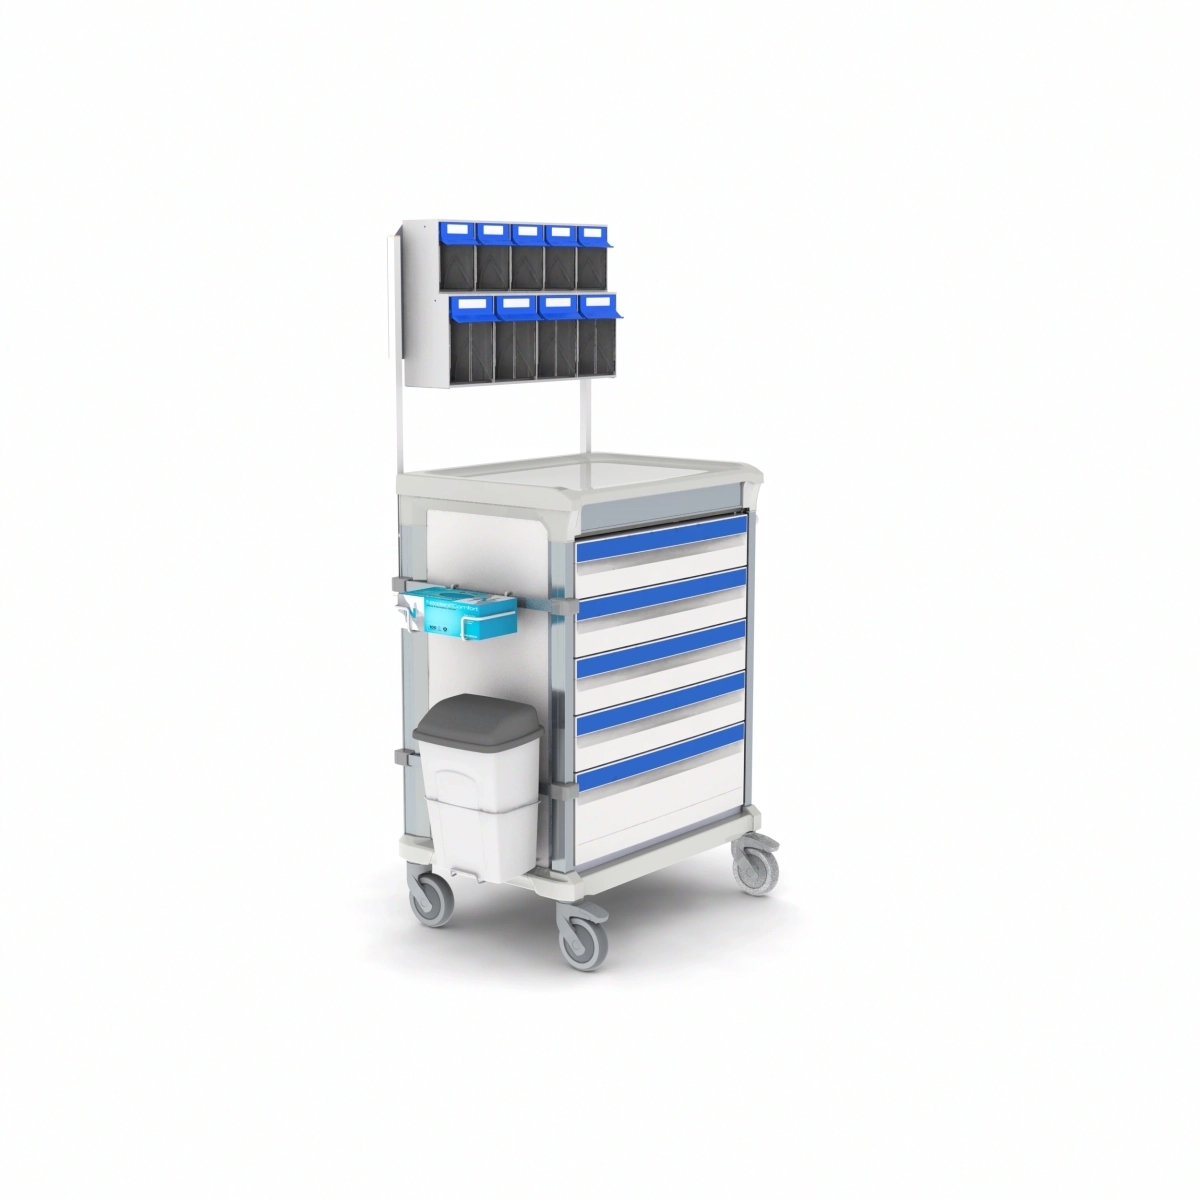 Chariot de soins intensifs à tiroir télescopique conforme aux normes d'hygiène - WEECART_0